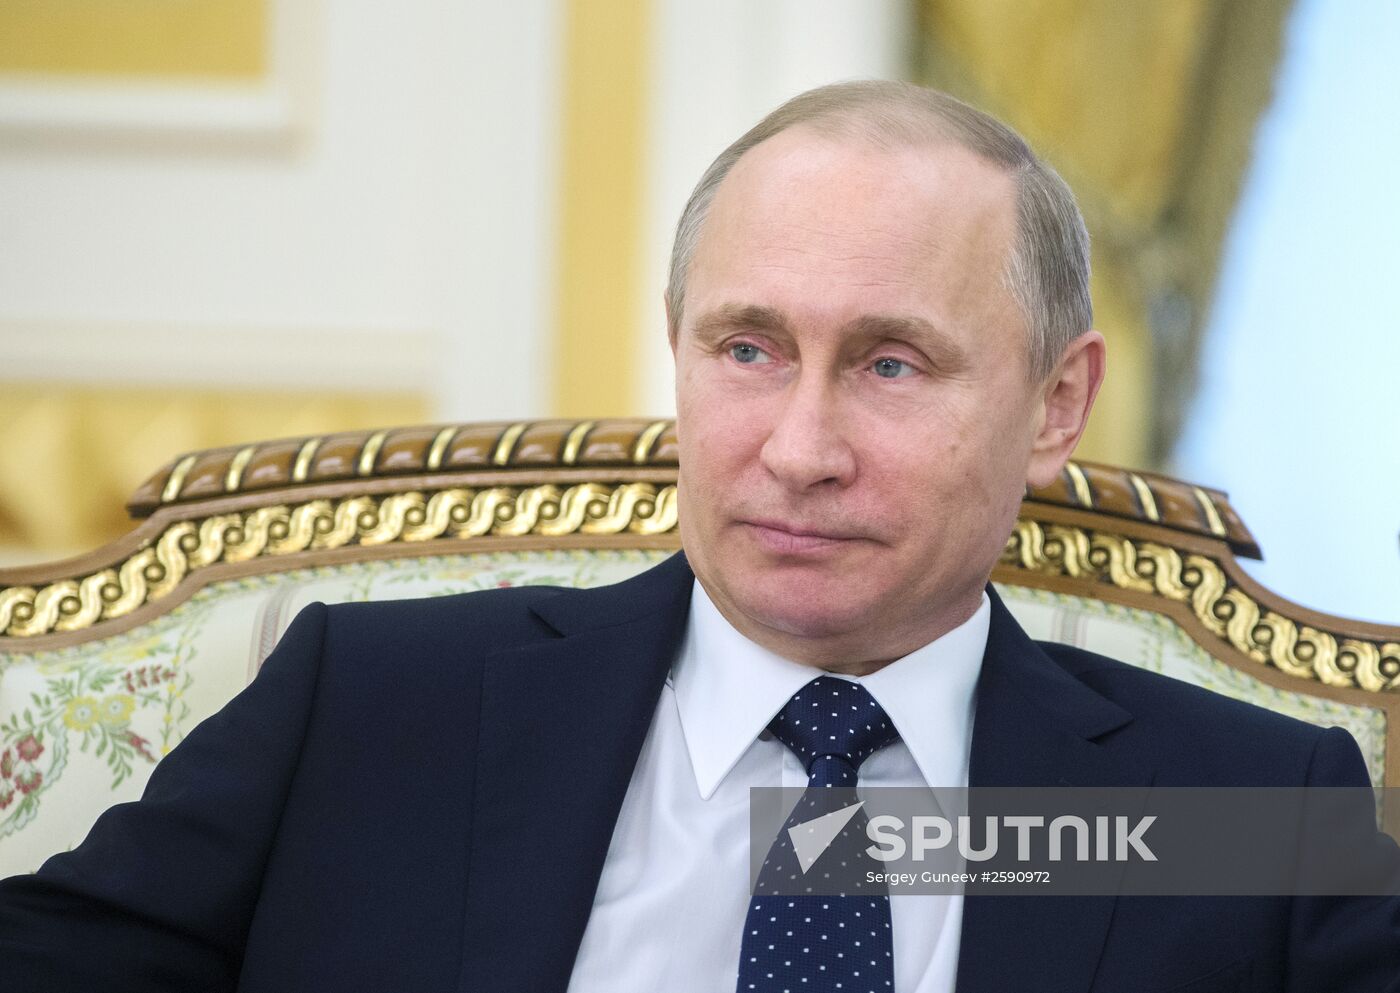 Vladimir Putin visits Kazakhstan